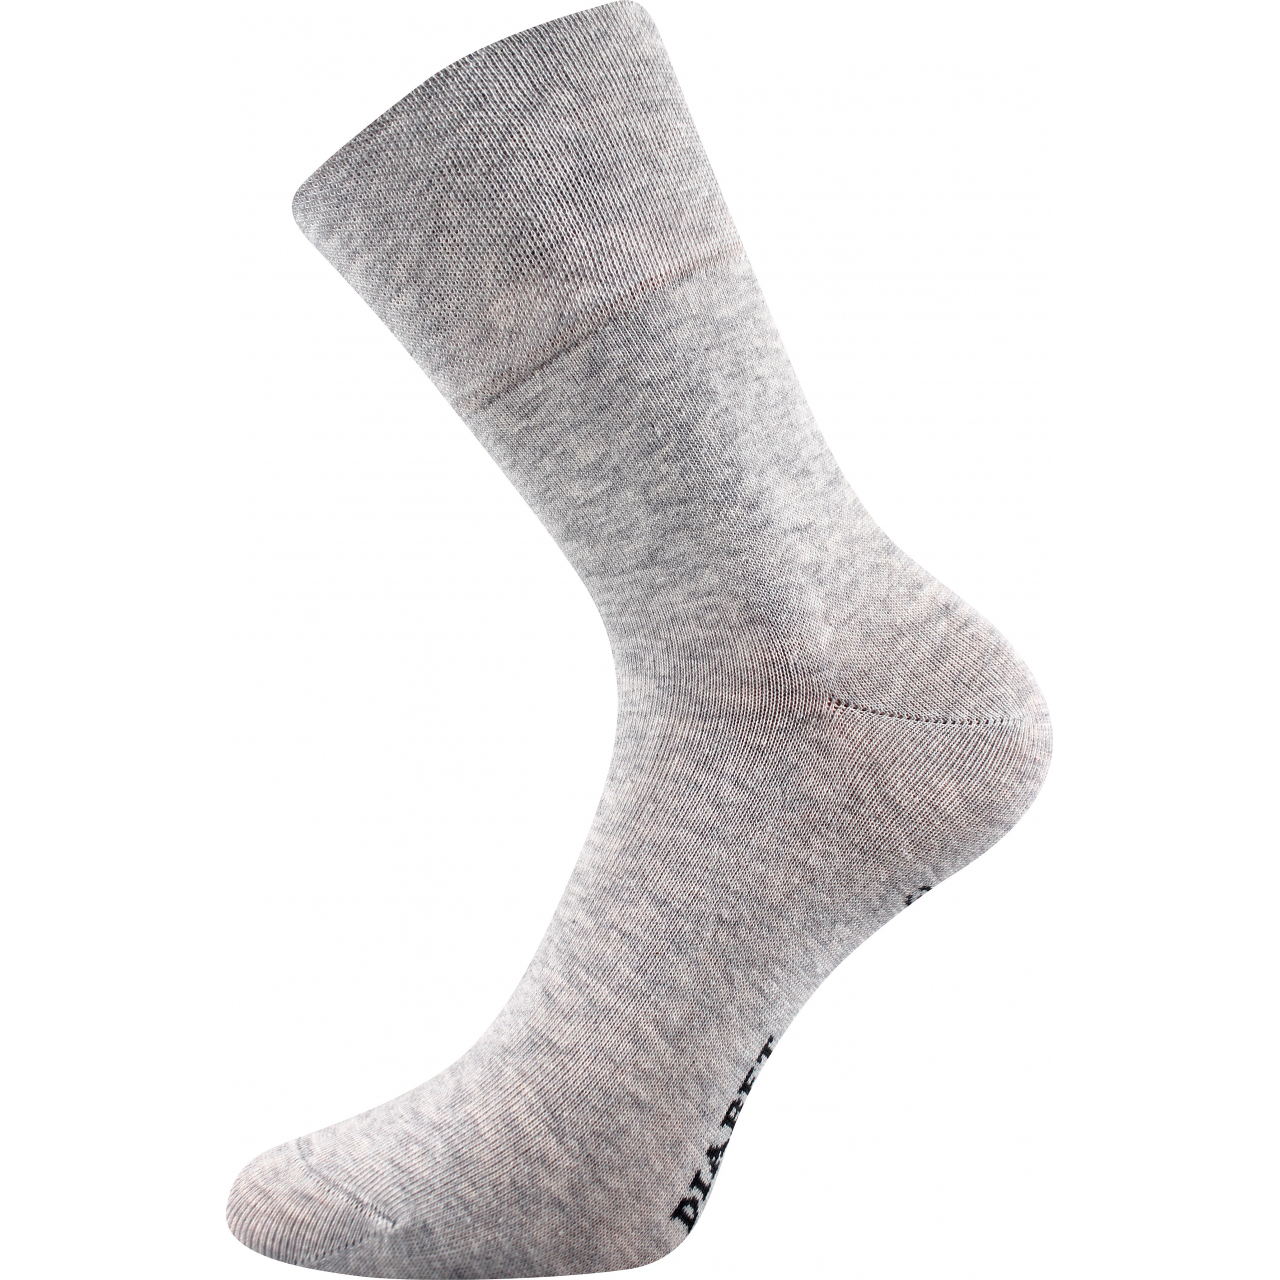 Ponožky klasické unisex Lonka Diagram - šedé, 35-38